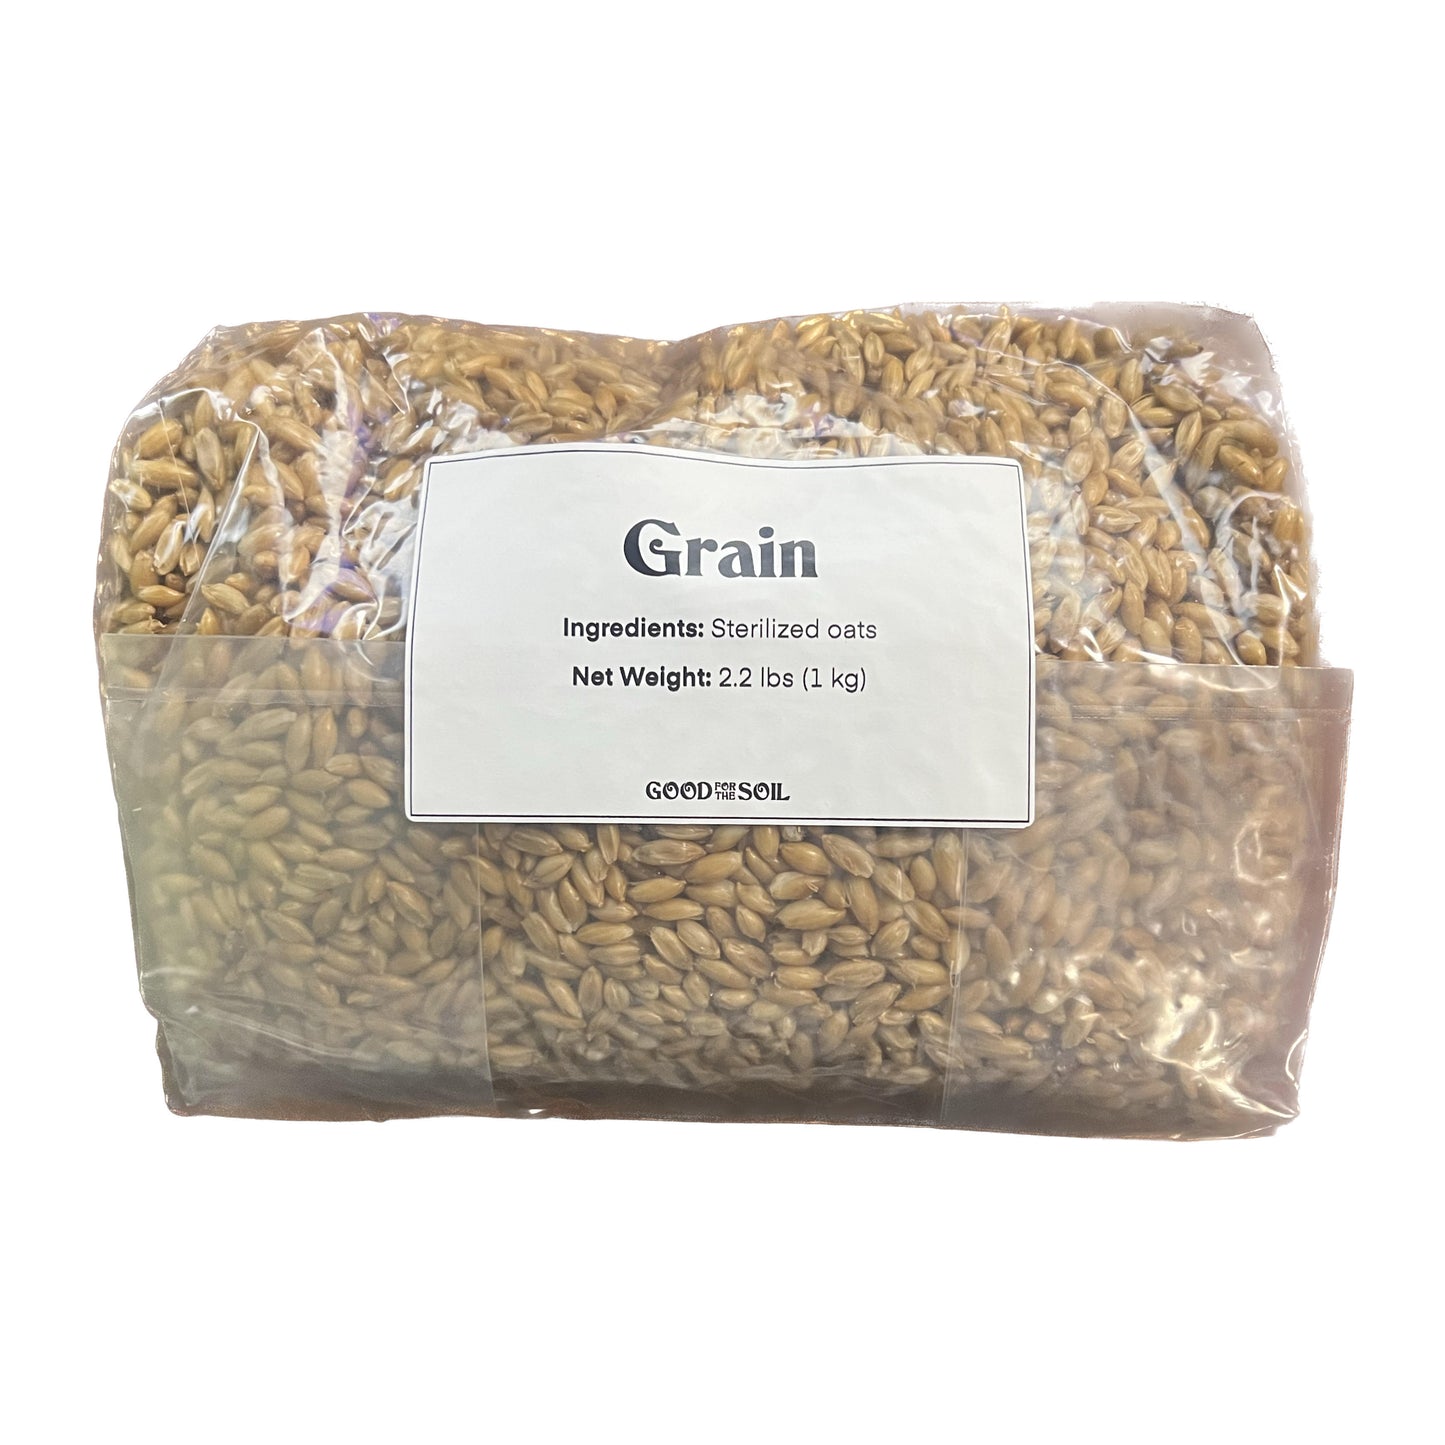 Good For The Soil Sterilized Oat Grain 2.2 lb